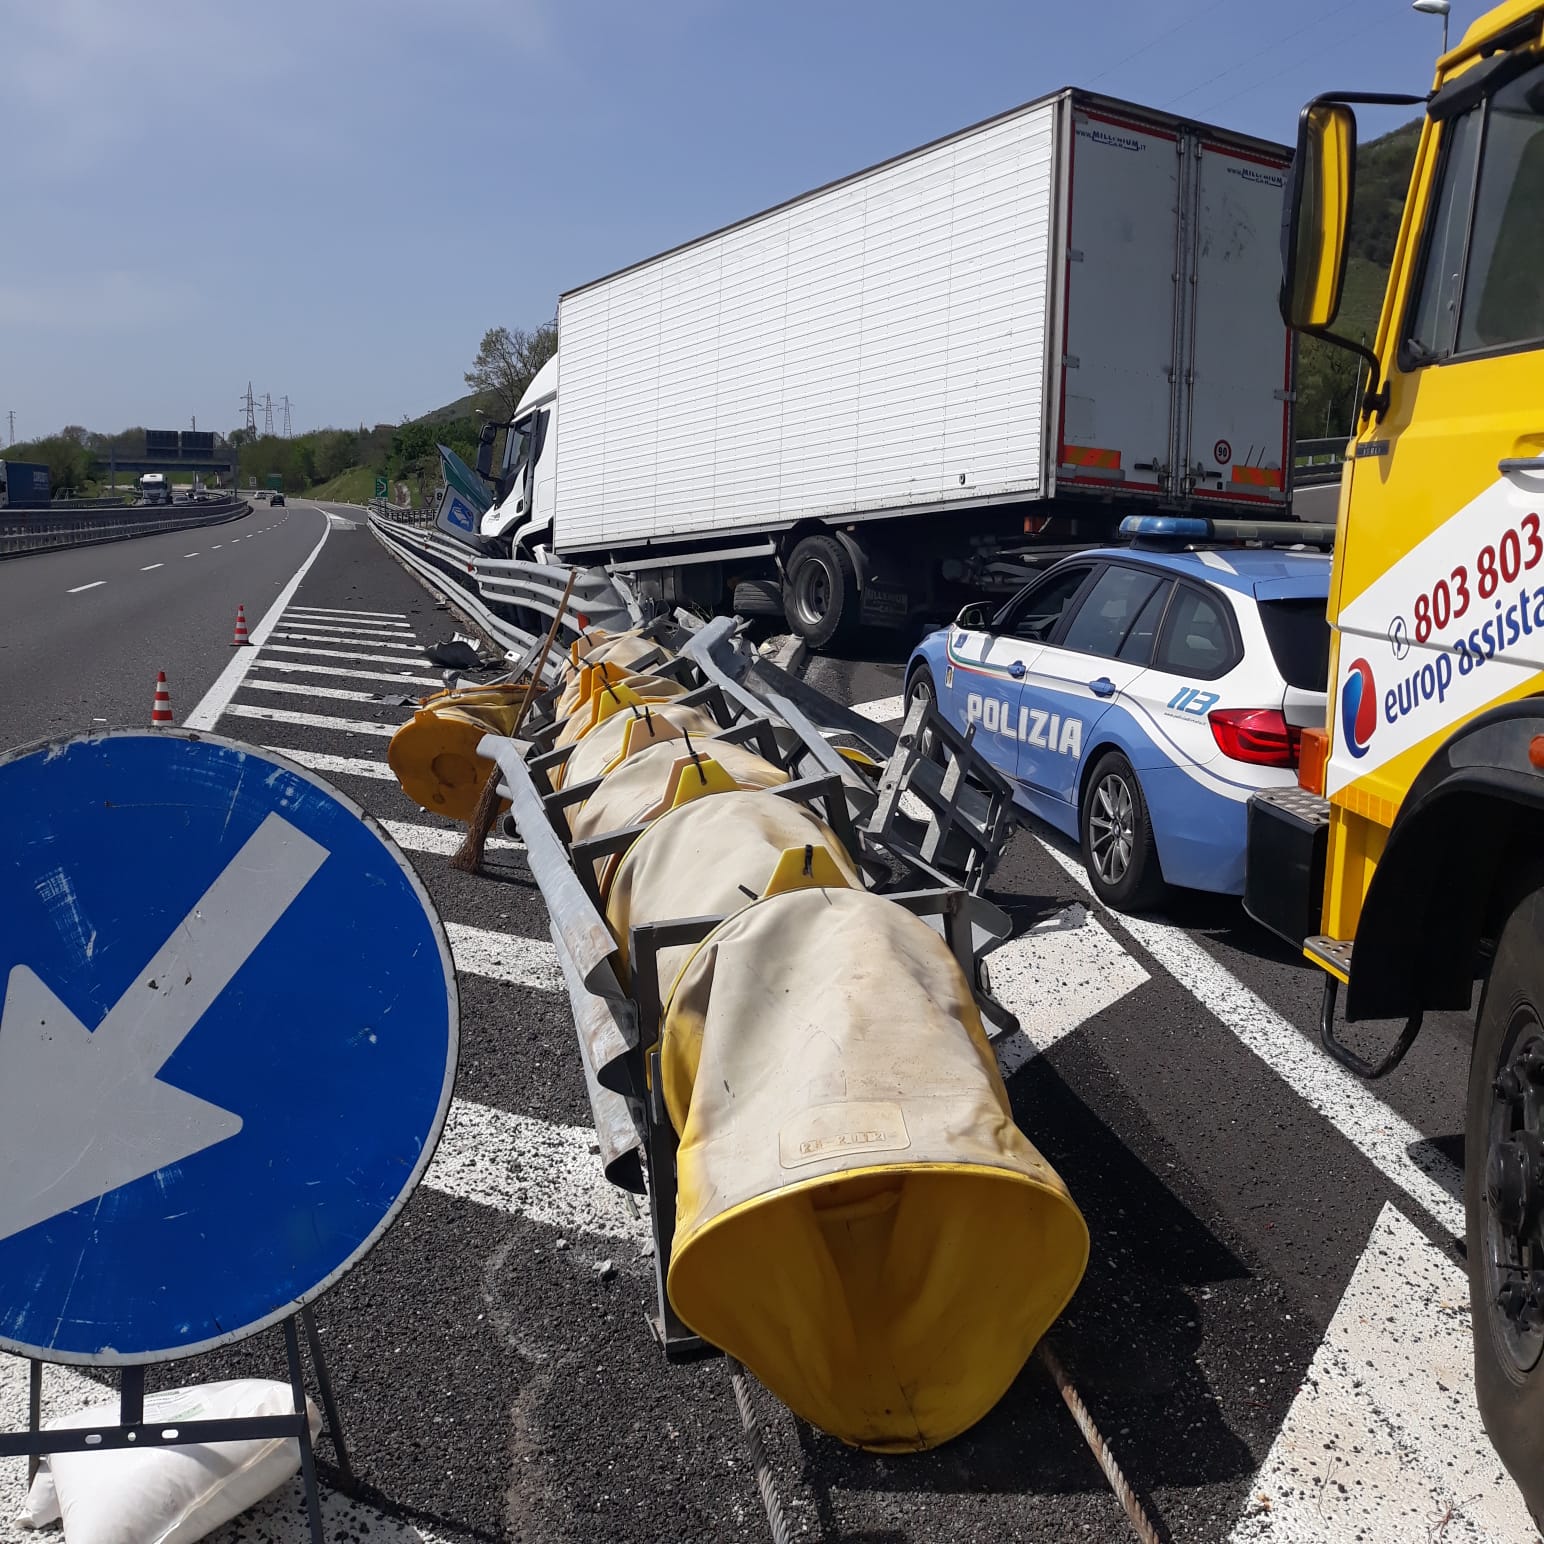 A2 Mediterraneo, camion si schianta contro guardrail a Polla: ferito